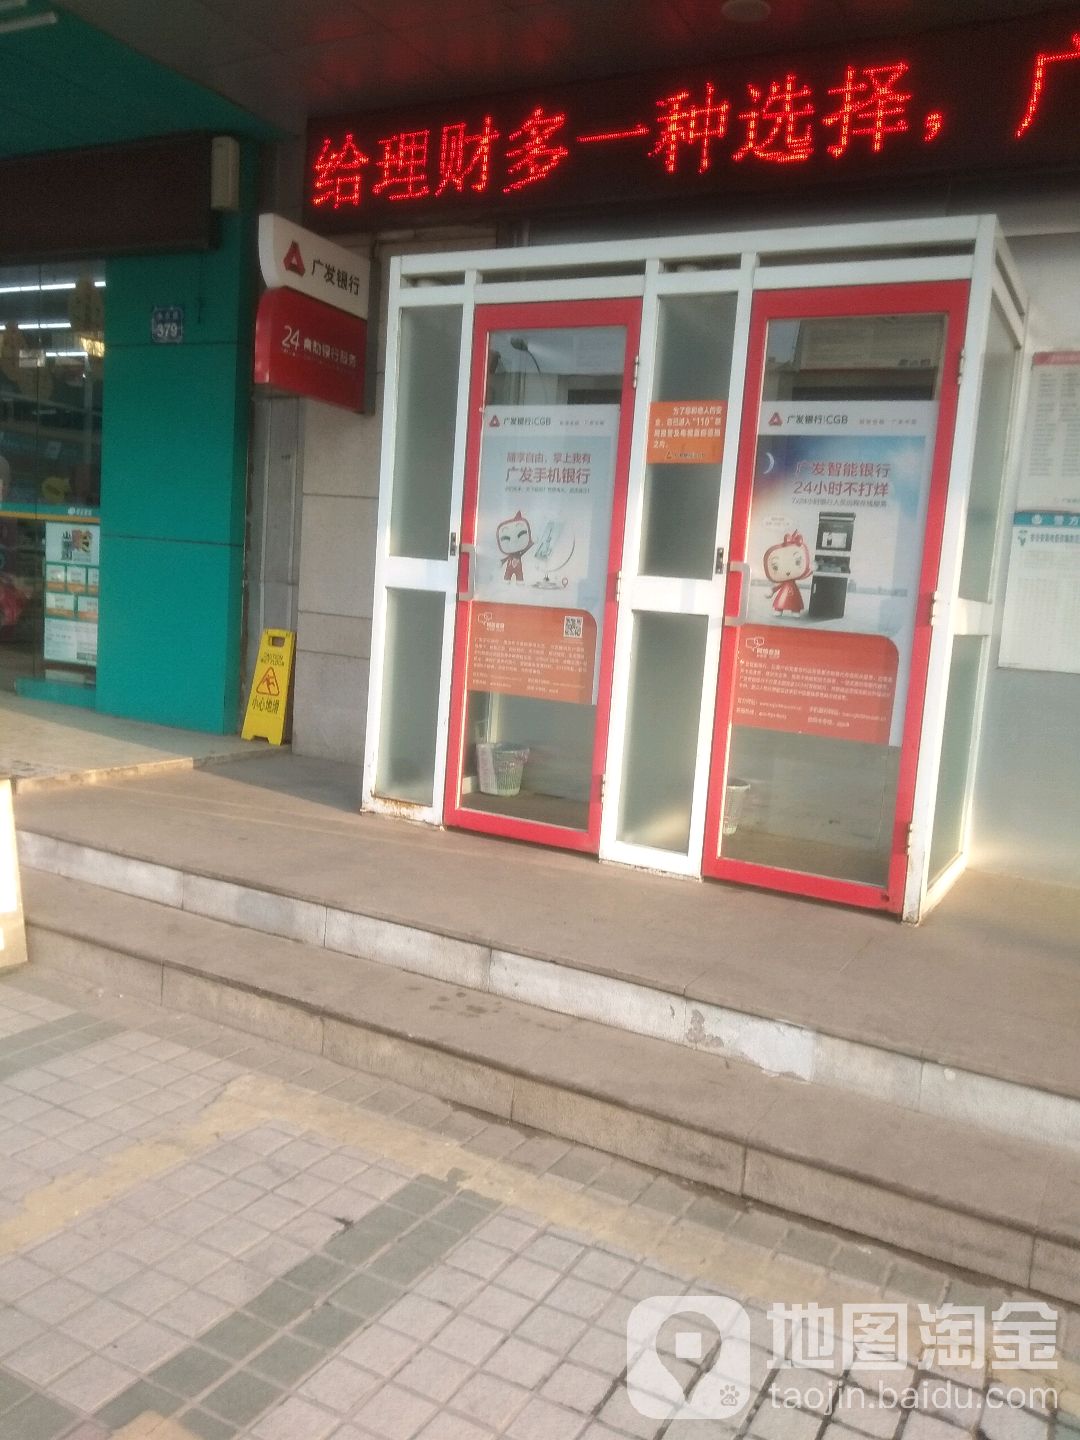 廣發銀行ATM(無錫永樂路支行)